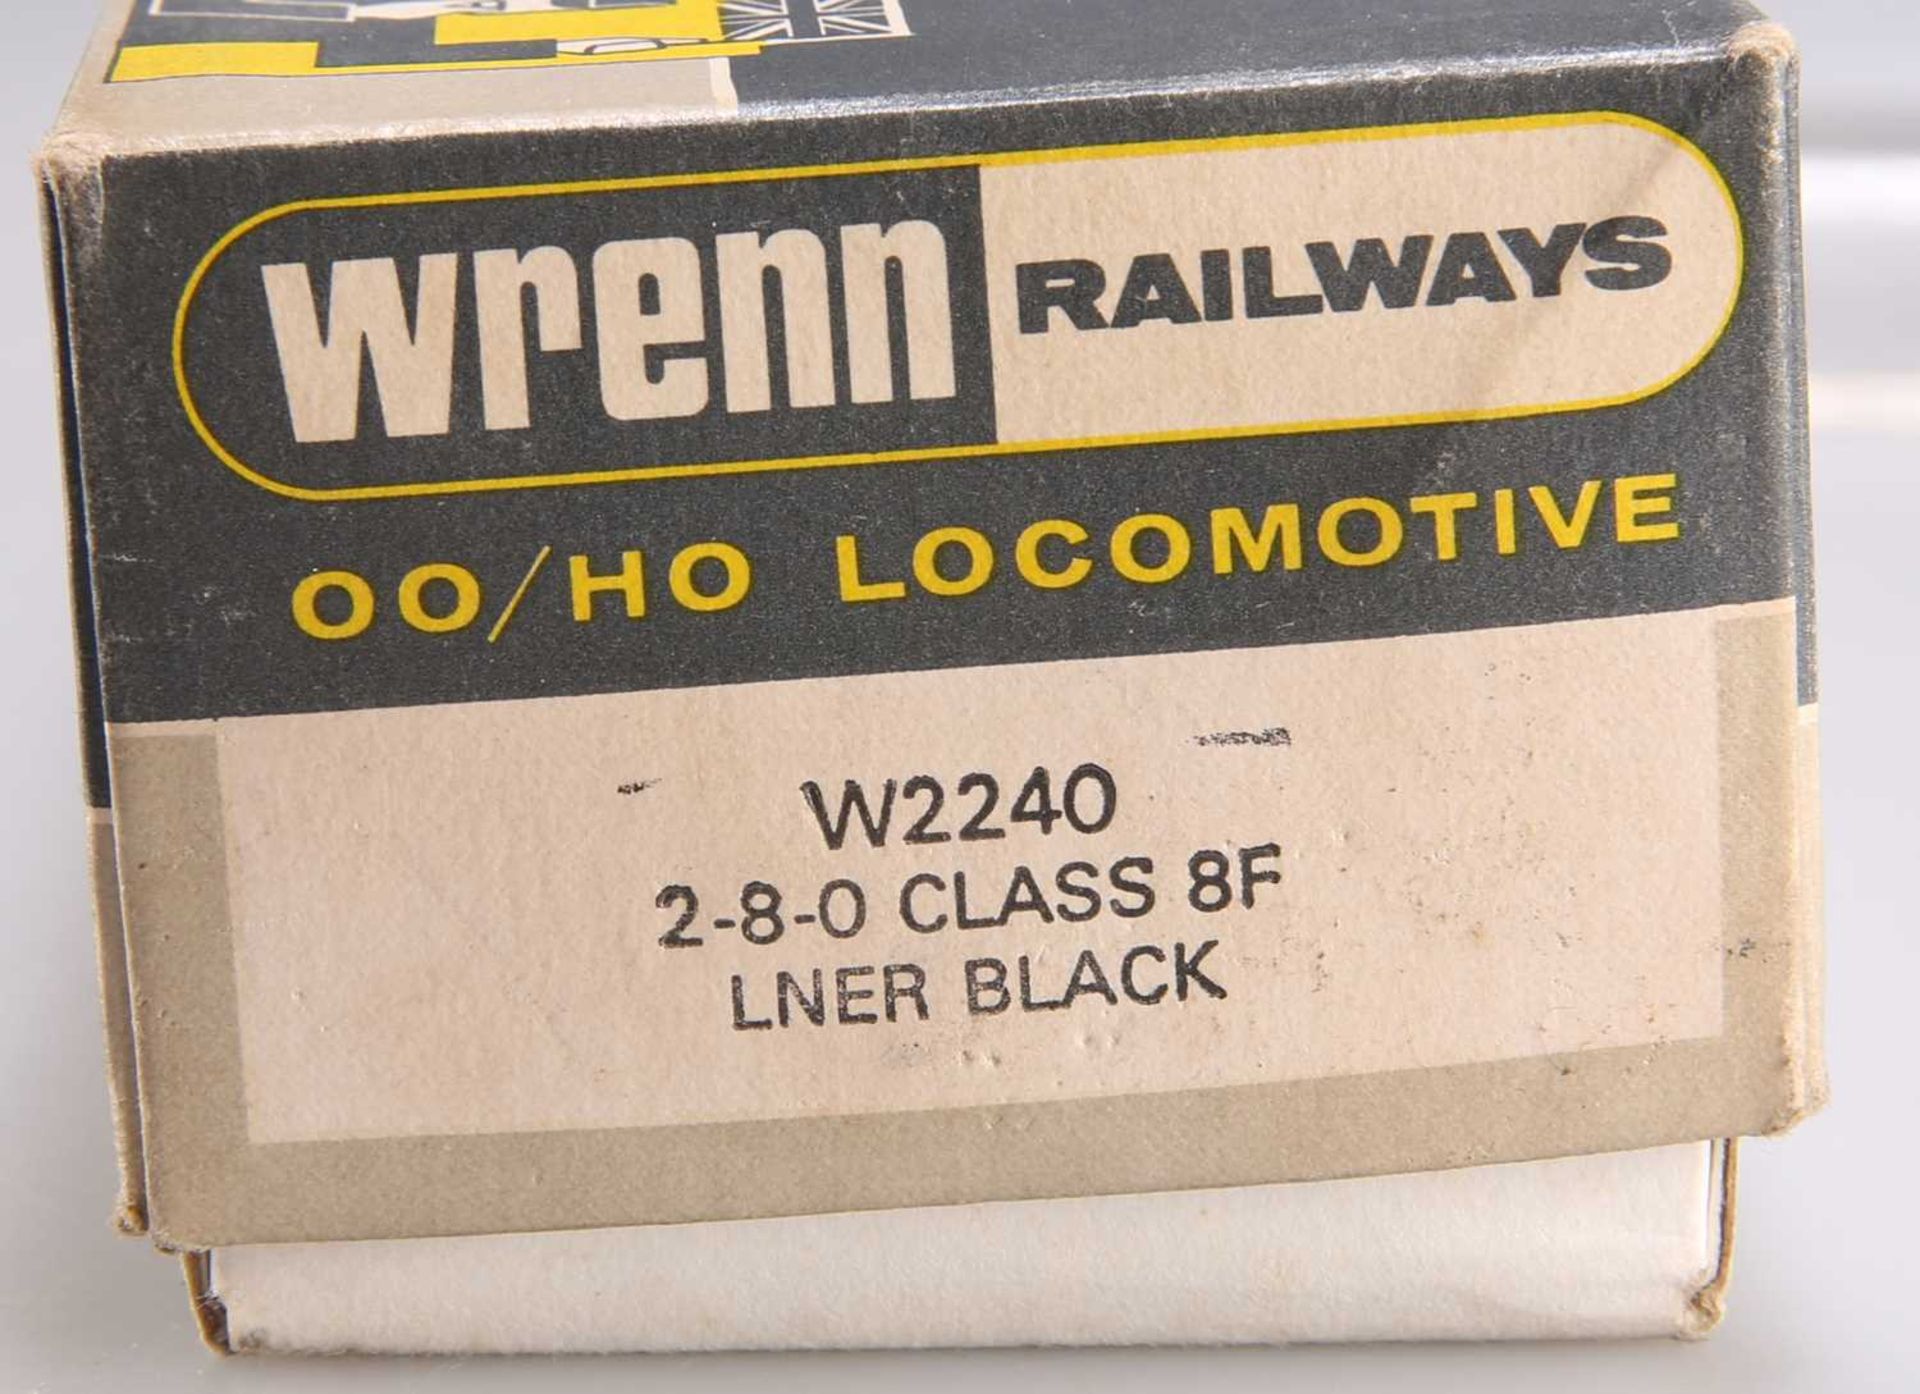 A WRENN W2240 2-8-0 CLASS 8F LNER BLACK - Bild 2 aus 2